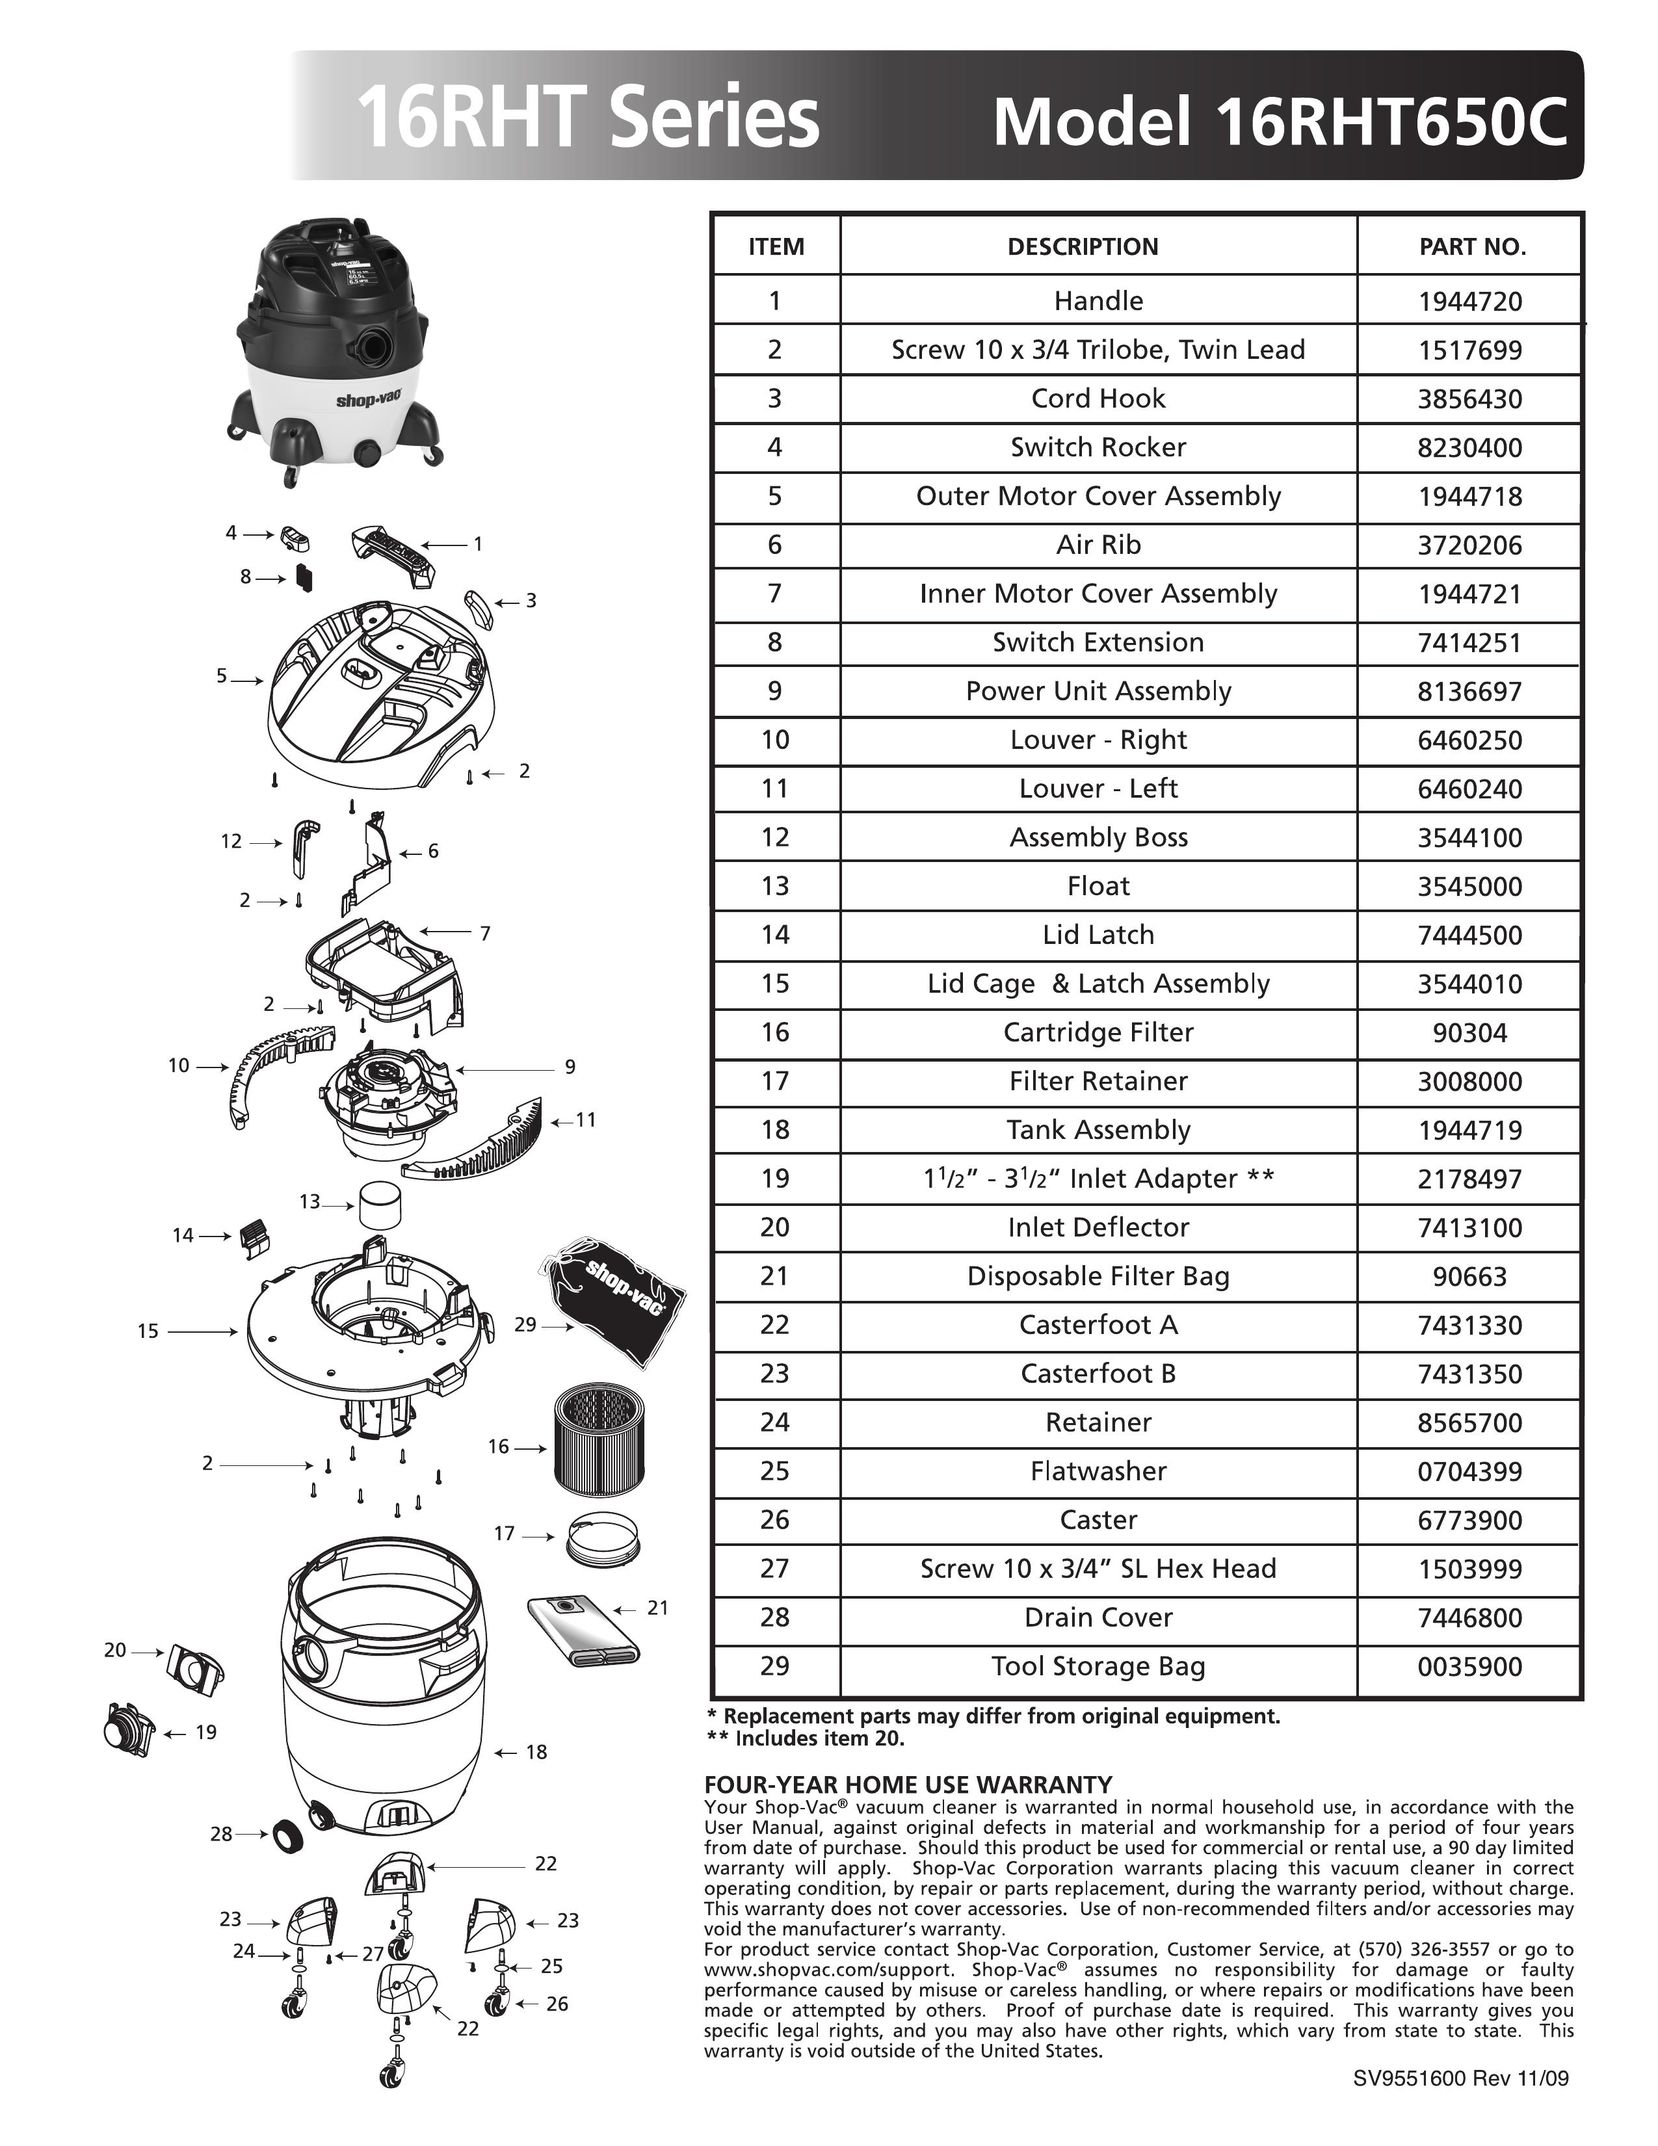 Shop-Vac 16RHT650C Vacuum Cleaner User Manual